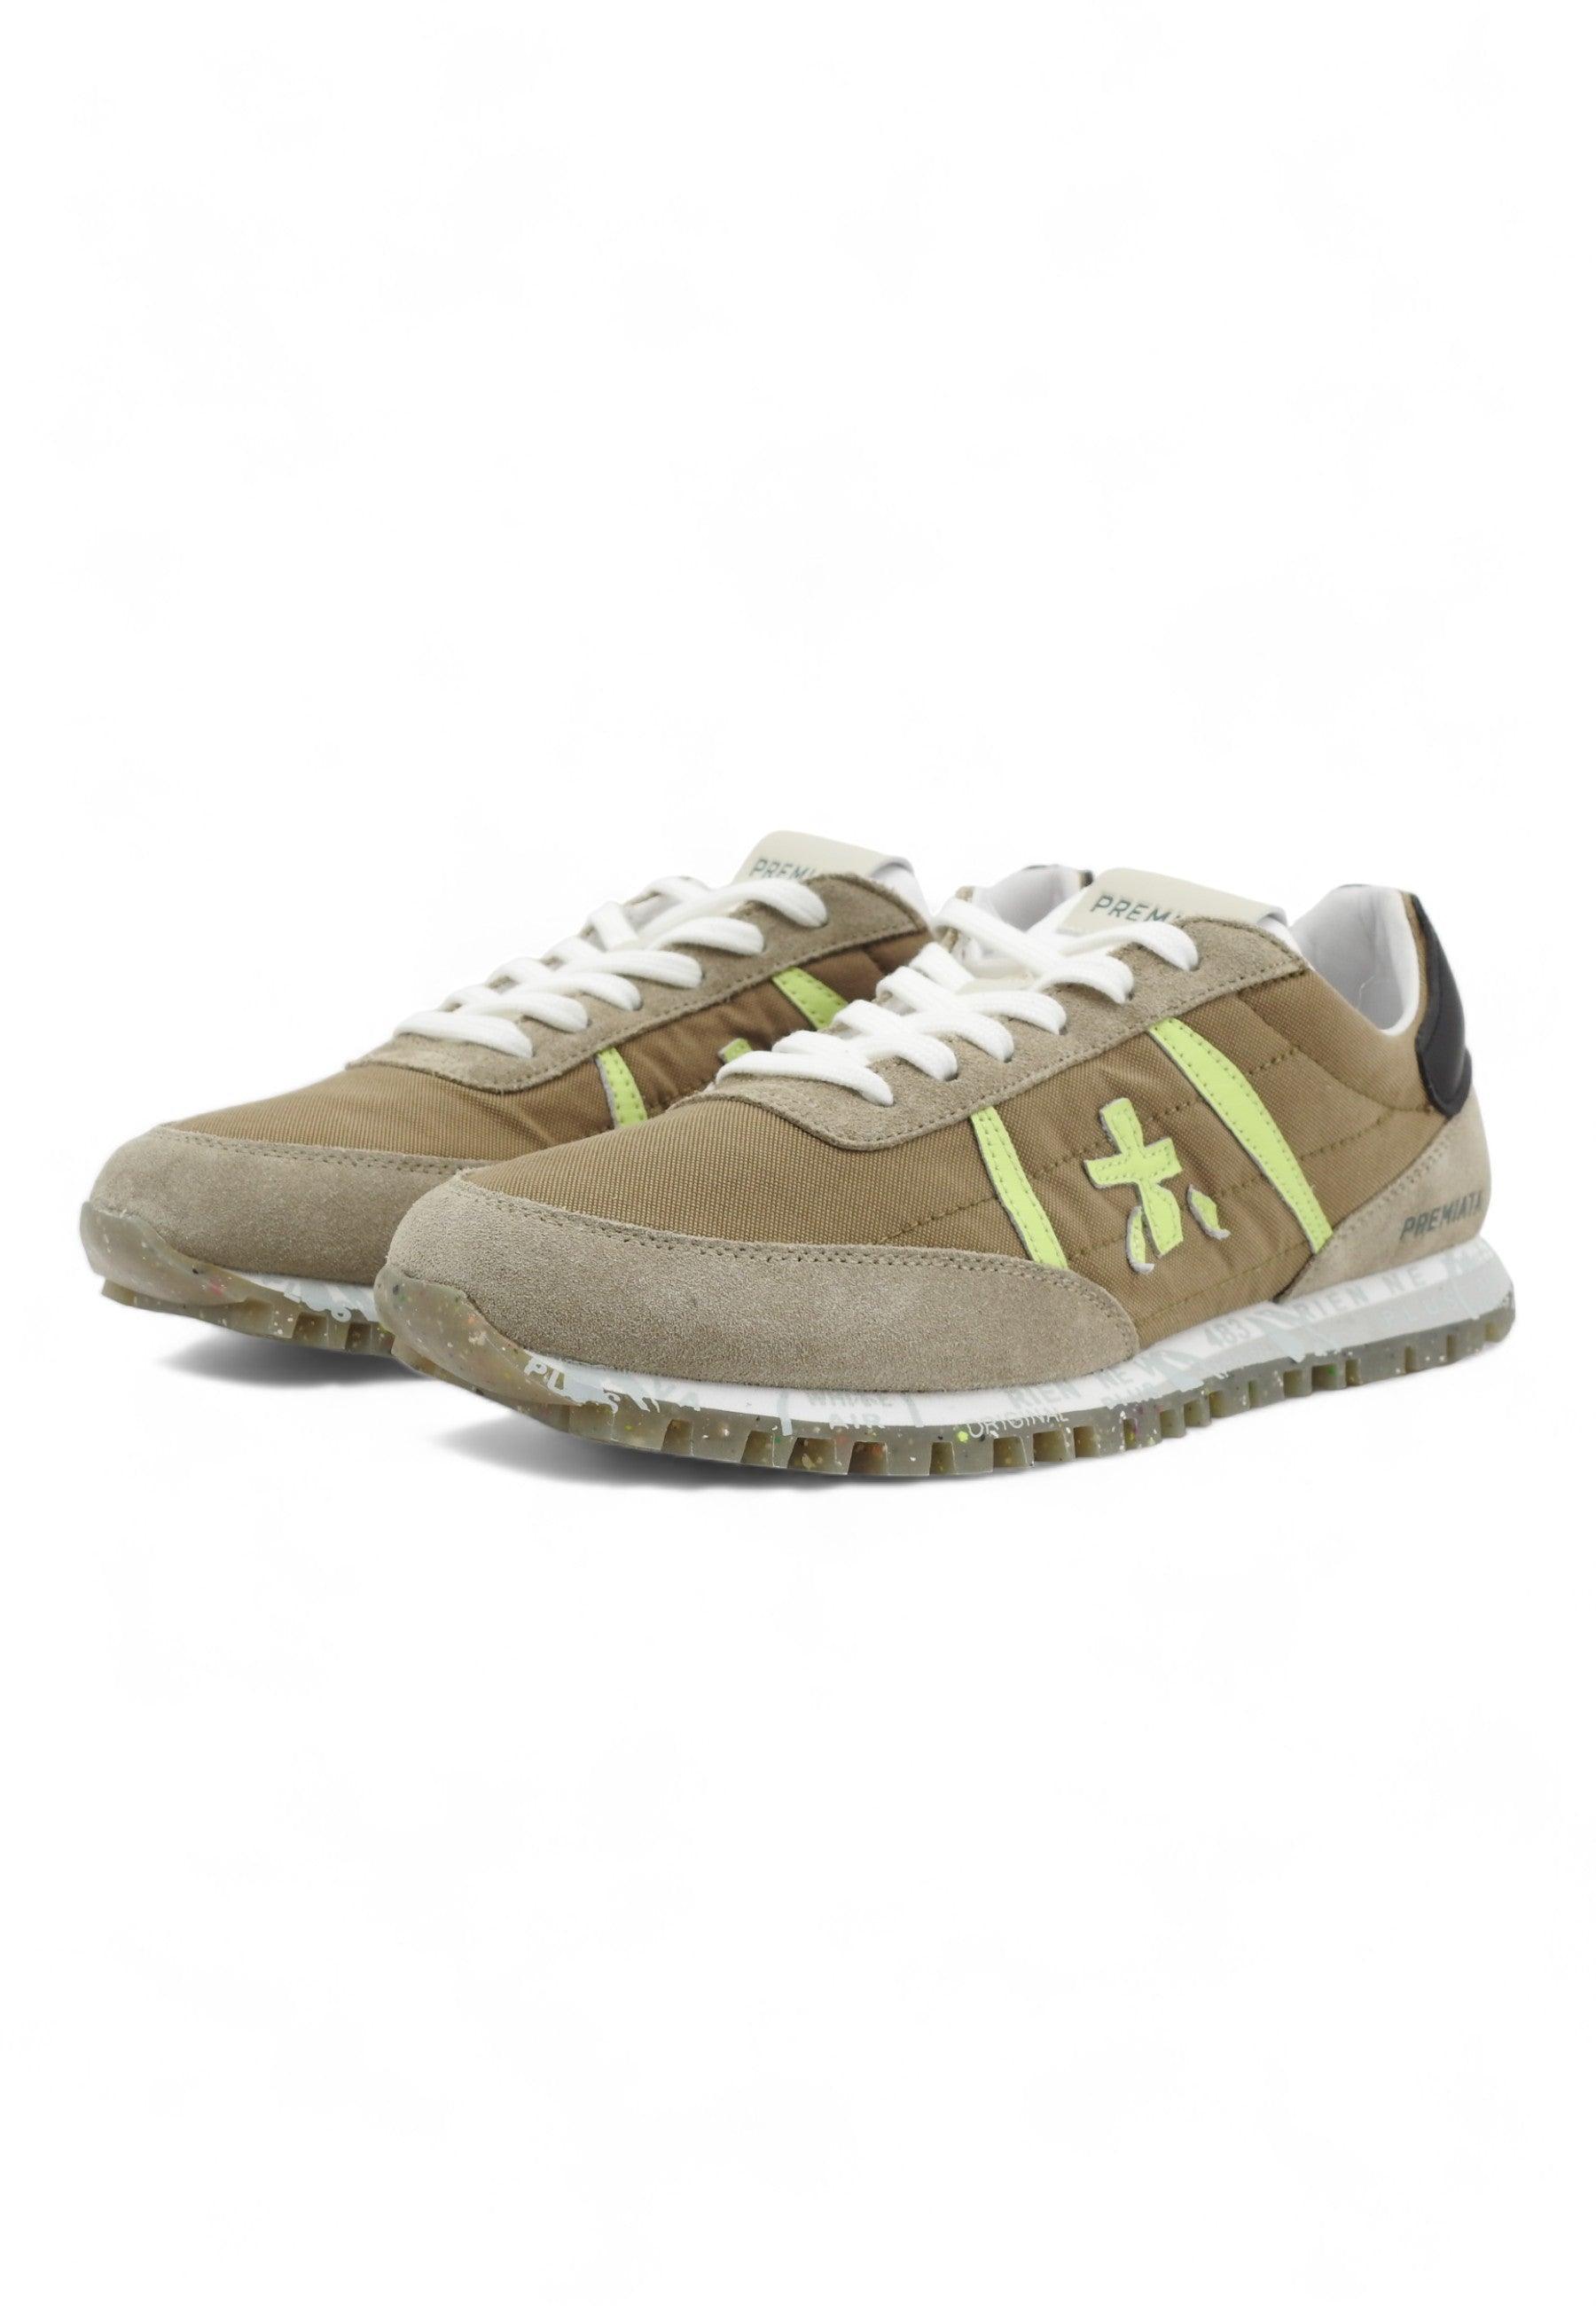 PREMIATA Sneaker Uomo Marrone Verde Grigio SEAN-6639 - Sandrini Calzature e Abbigliamento